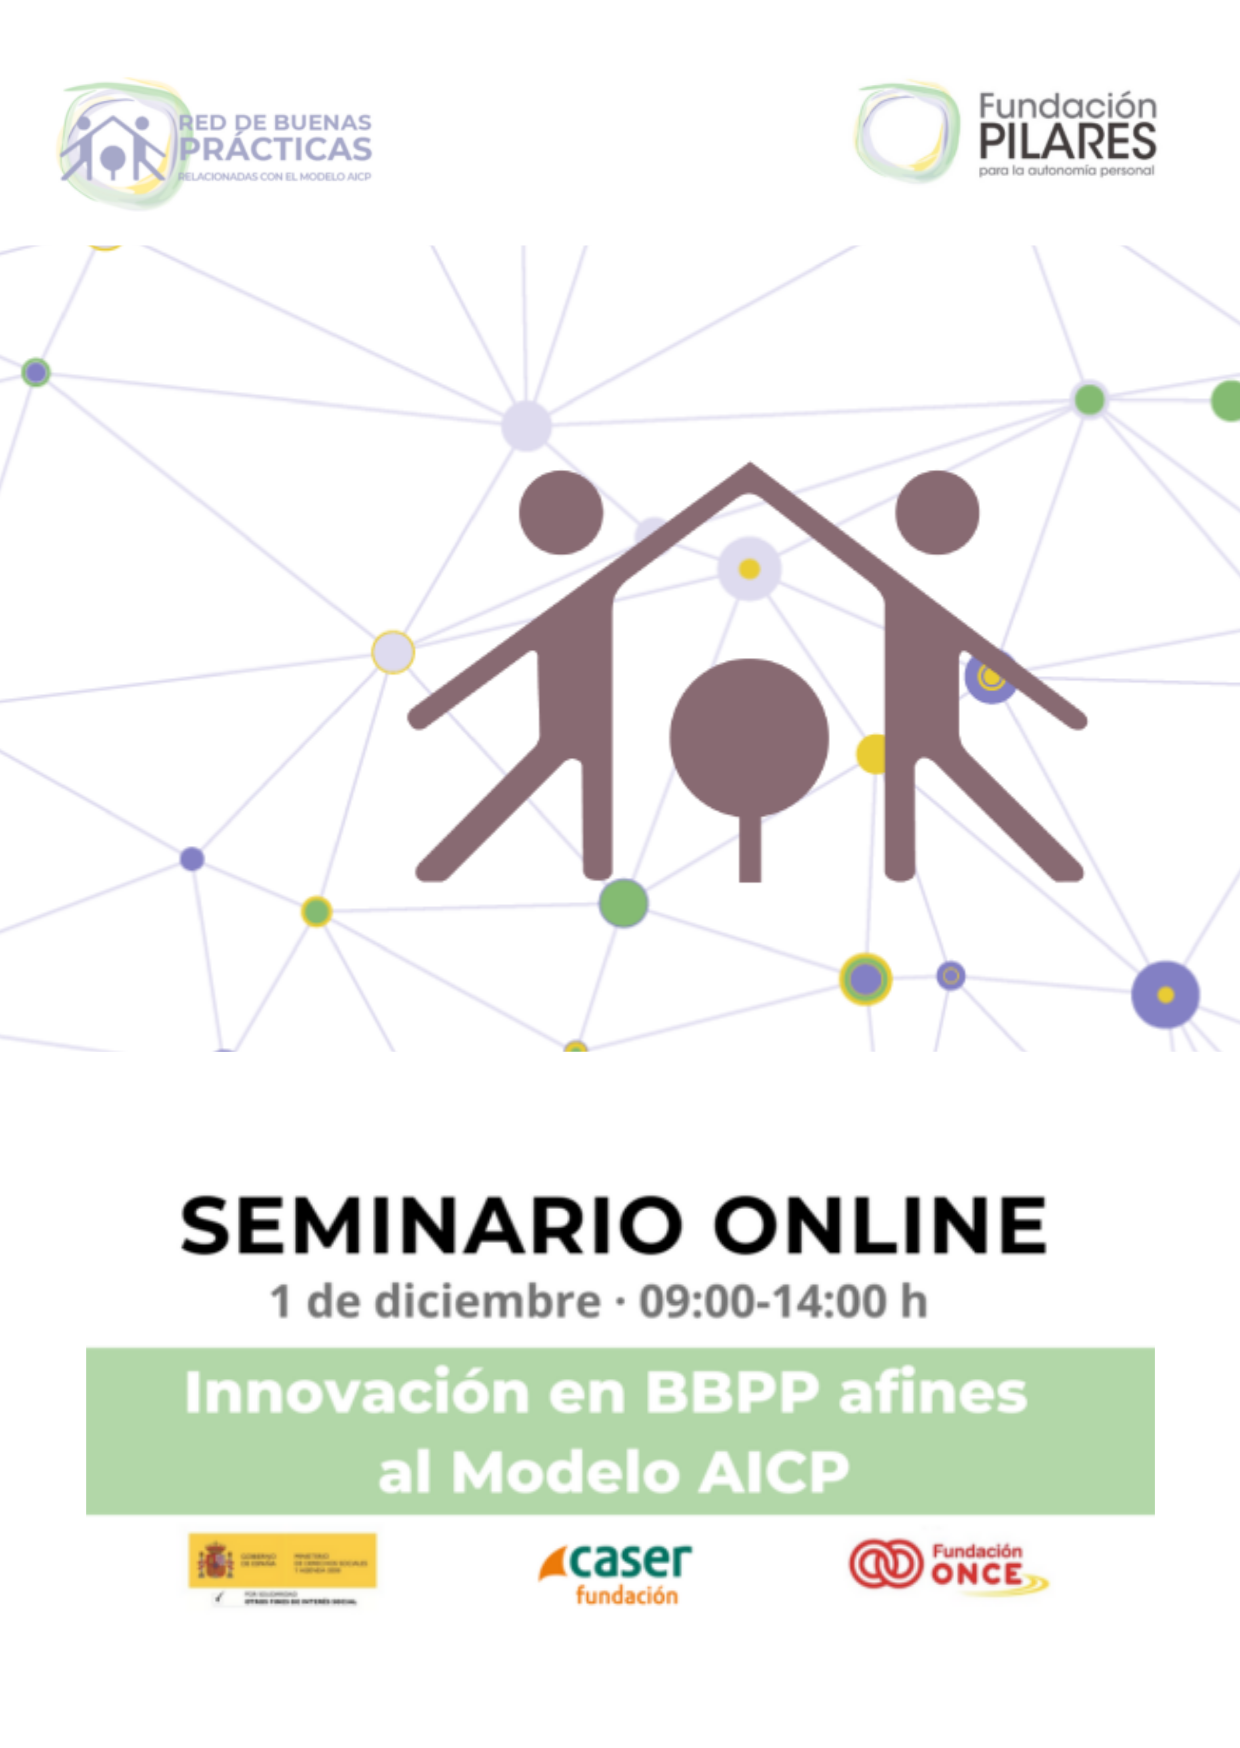 Cartel anunciador: Seminario Online Fundación Pilares